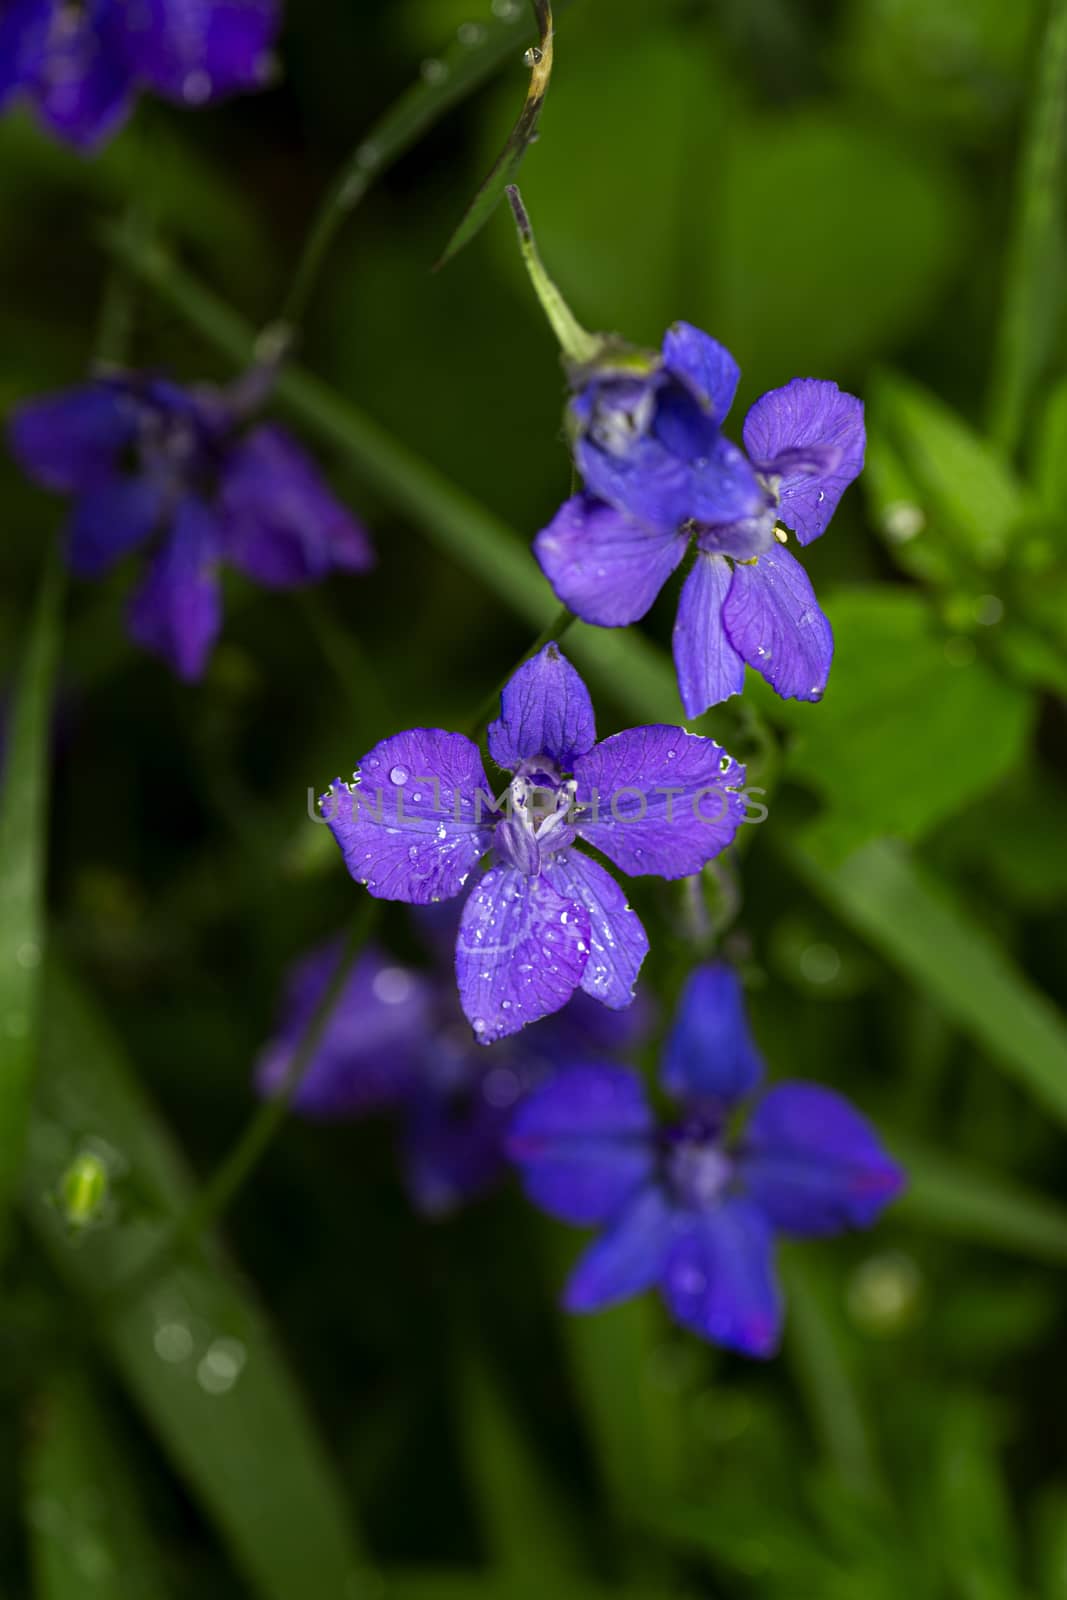 Purple wild flower by mypstudio